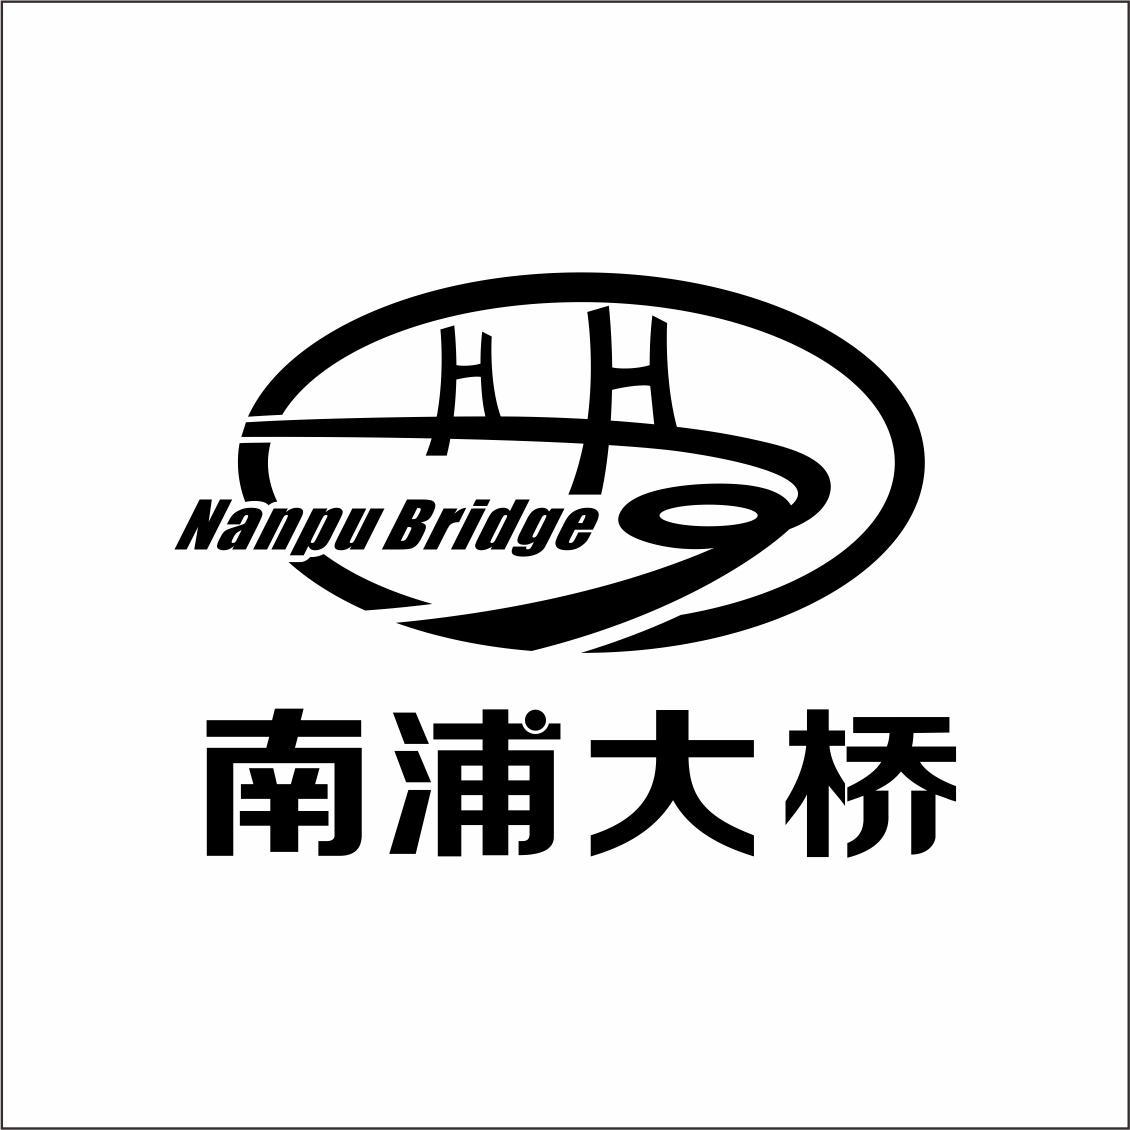 NAN PU BRIDGE 南浦大桥